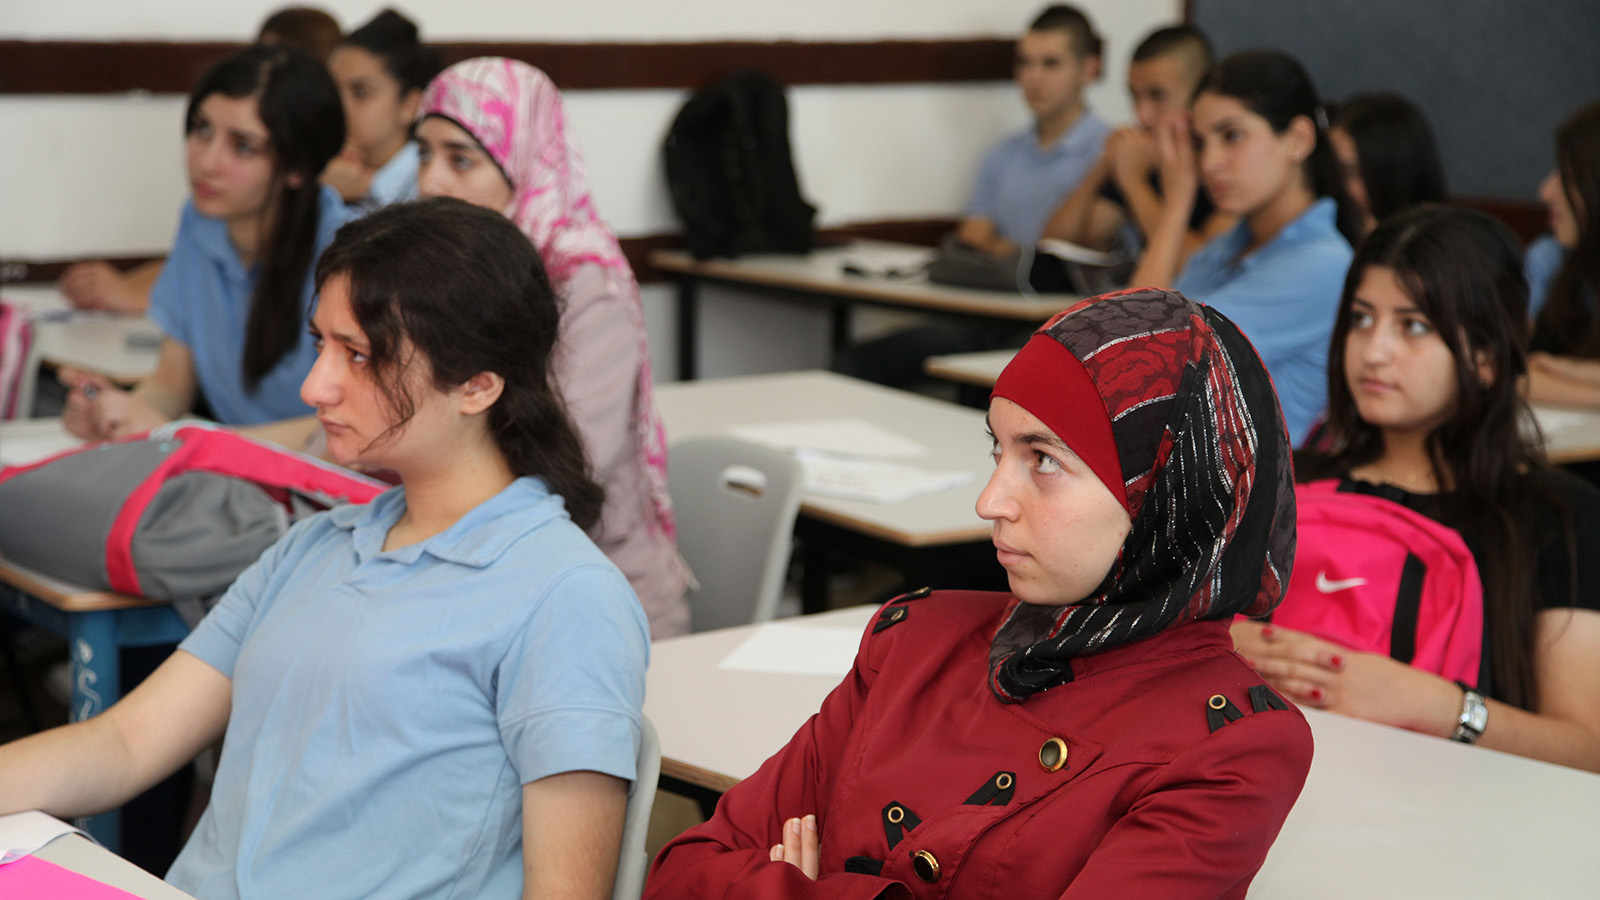 תלמידים ערבים במקיף אבו גוש, למצולמים אין קשר לכתבה (צילום: יצחק הררי / פלאש 90).